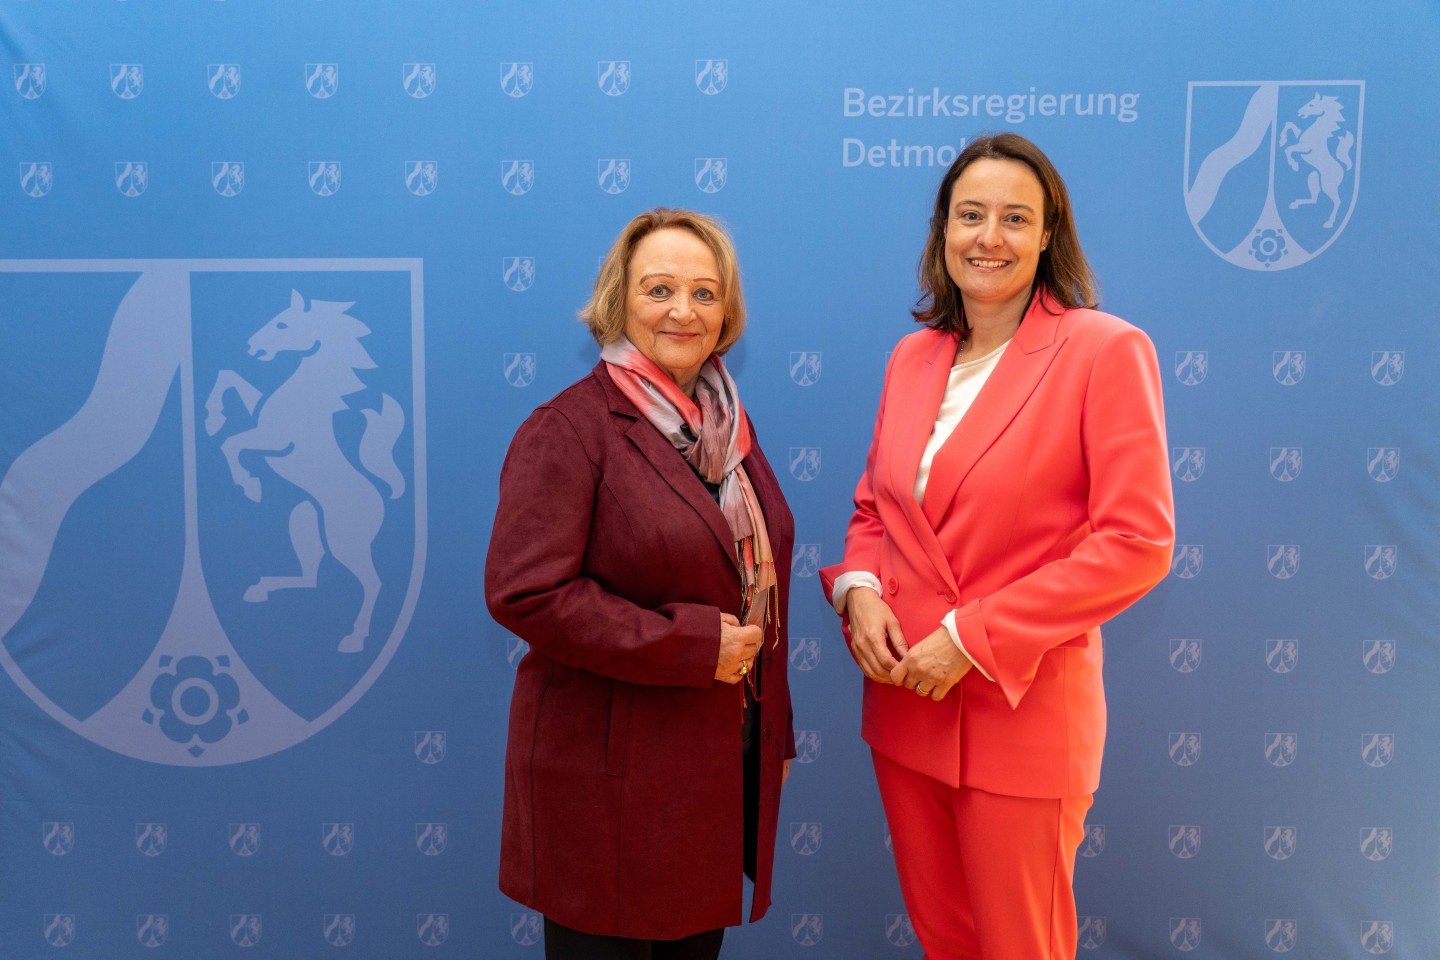 Bildunterschrift: Auf Einladung der Regierungspräsidentin Anna Katharina Bölling (rechts im Bild) und der Antisemitismusbeauftragten des Landes Nordrhein-Westfalen Sabine Leutheusser-Schnarrenberger (